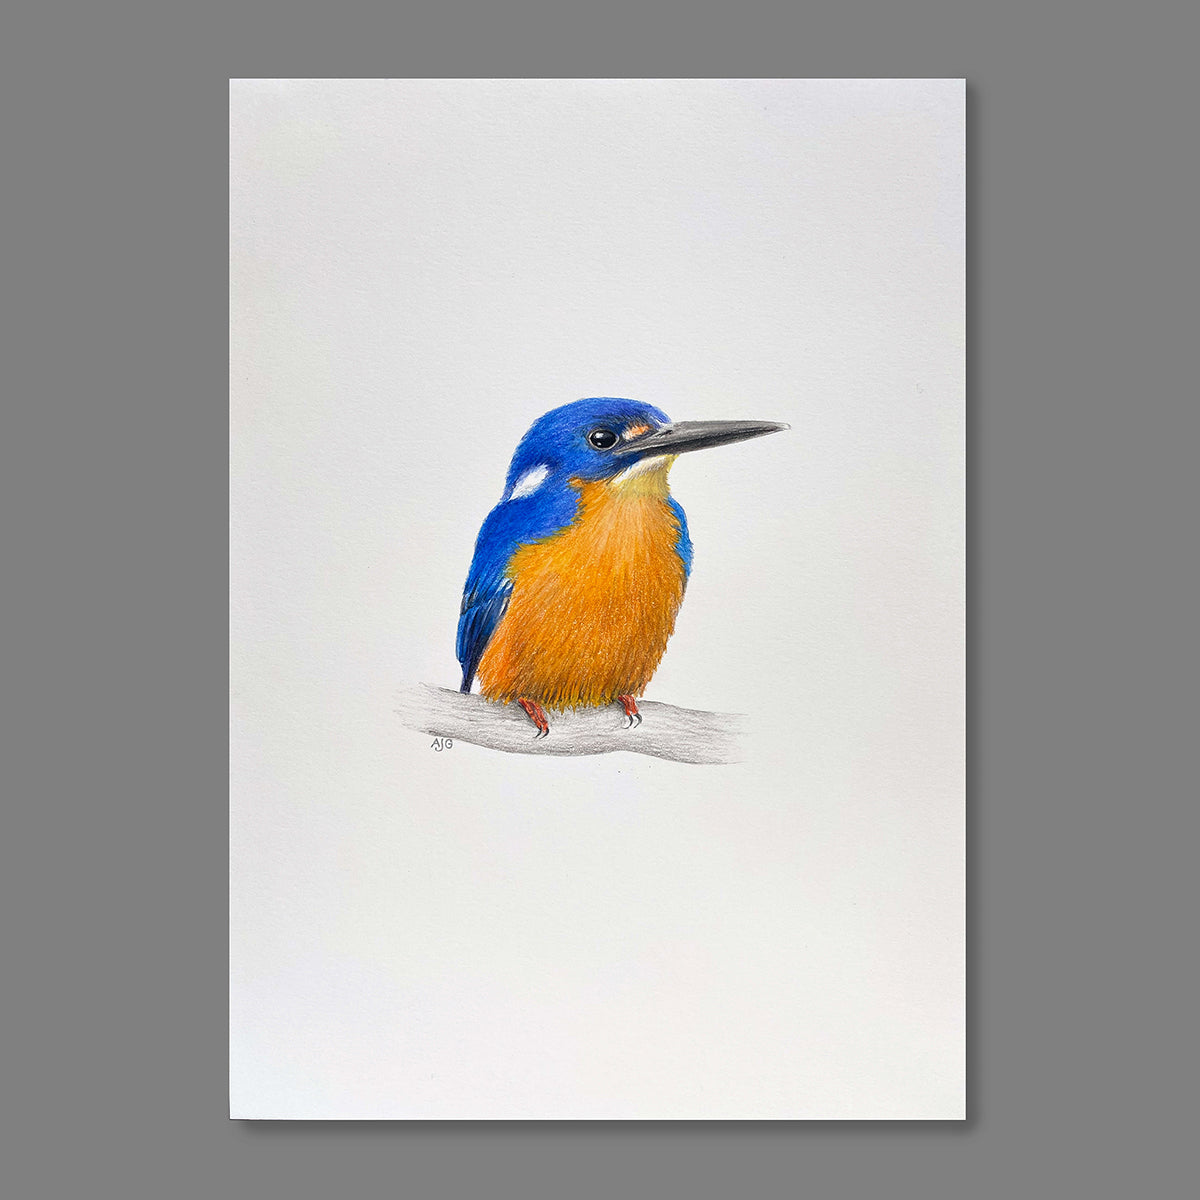 Azure kingfisher by bird artist Amanda Gosse, original painting